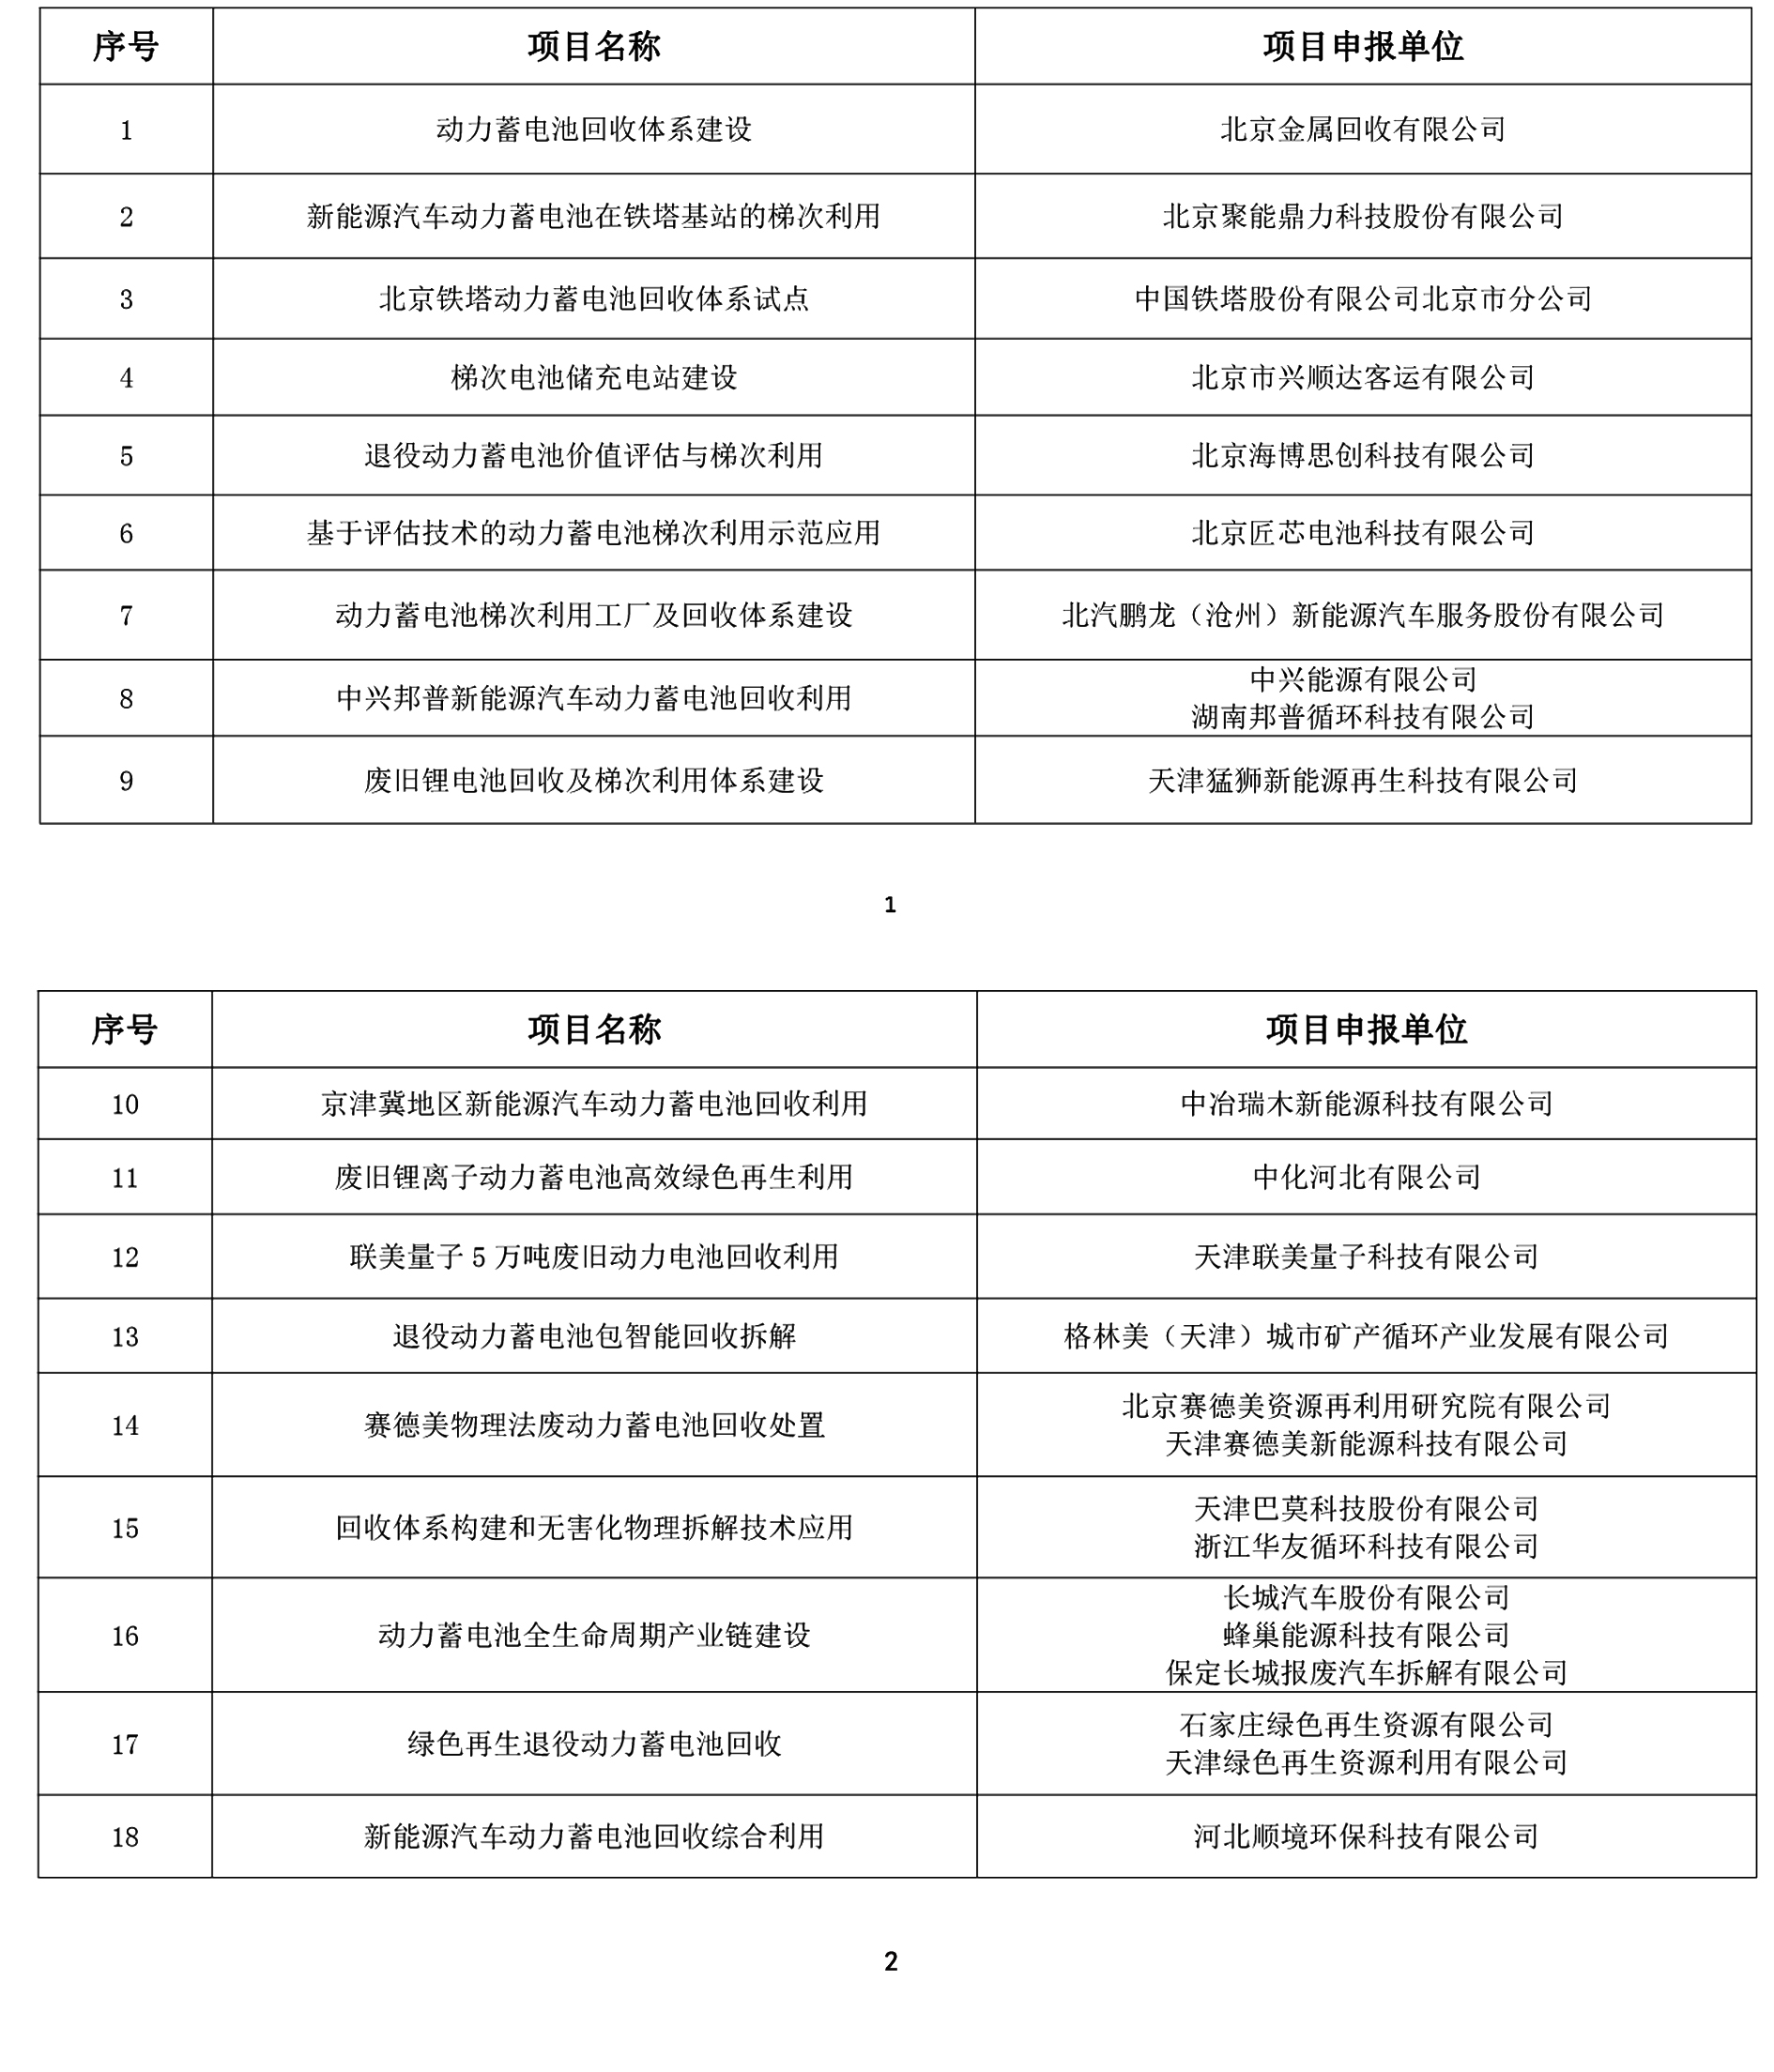 京津冀地区新能源汽车动力电池回收利用试点示范项目名单公布(图1)